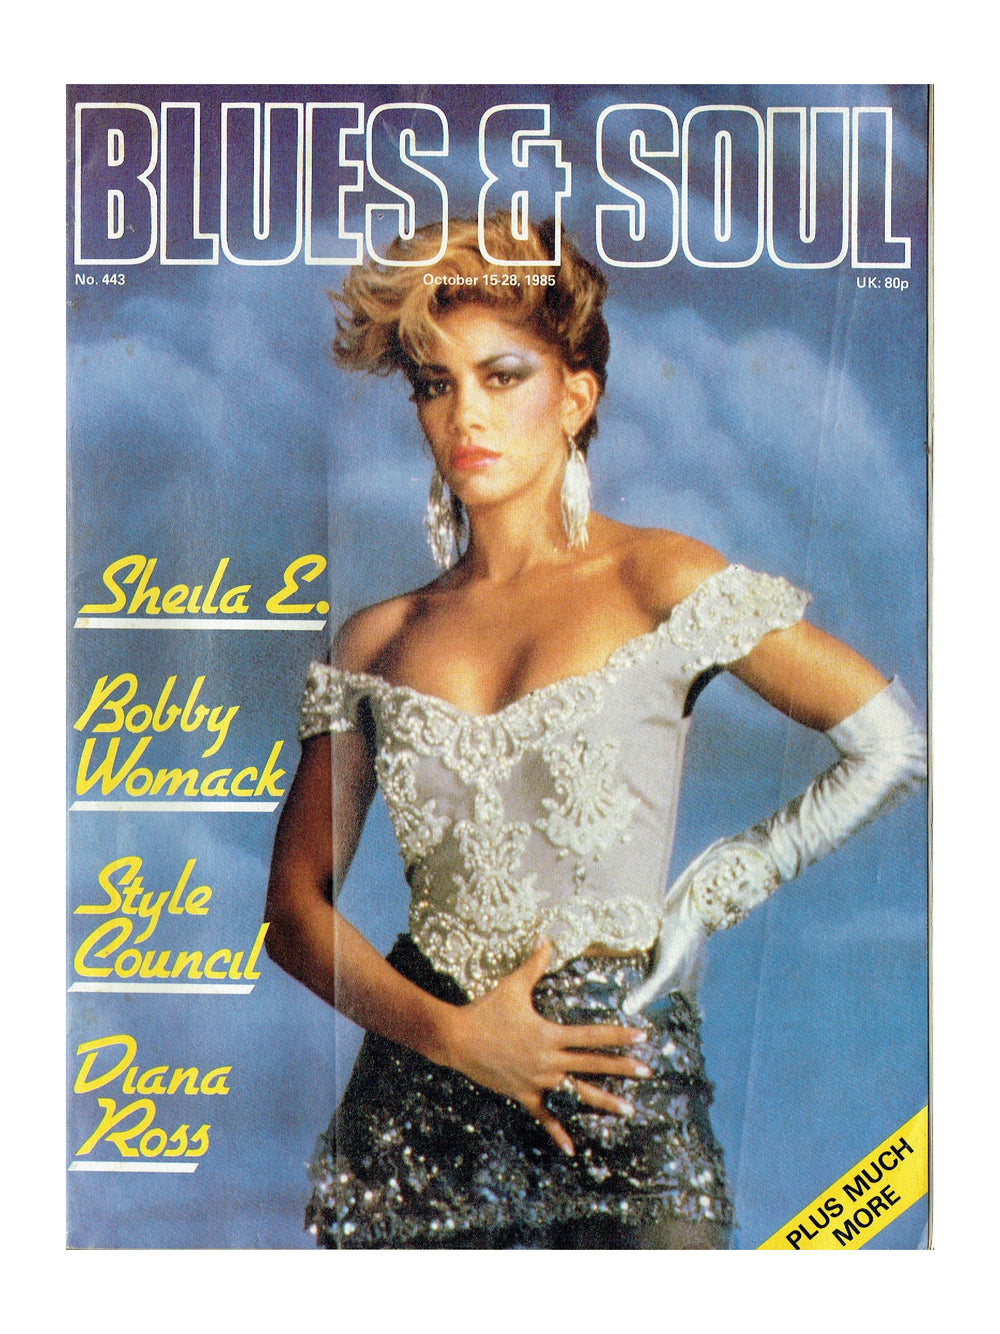 Blues & Soul Magazine October 1985 Sheila E Cover No Prince